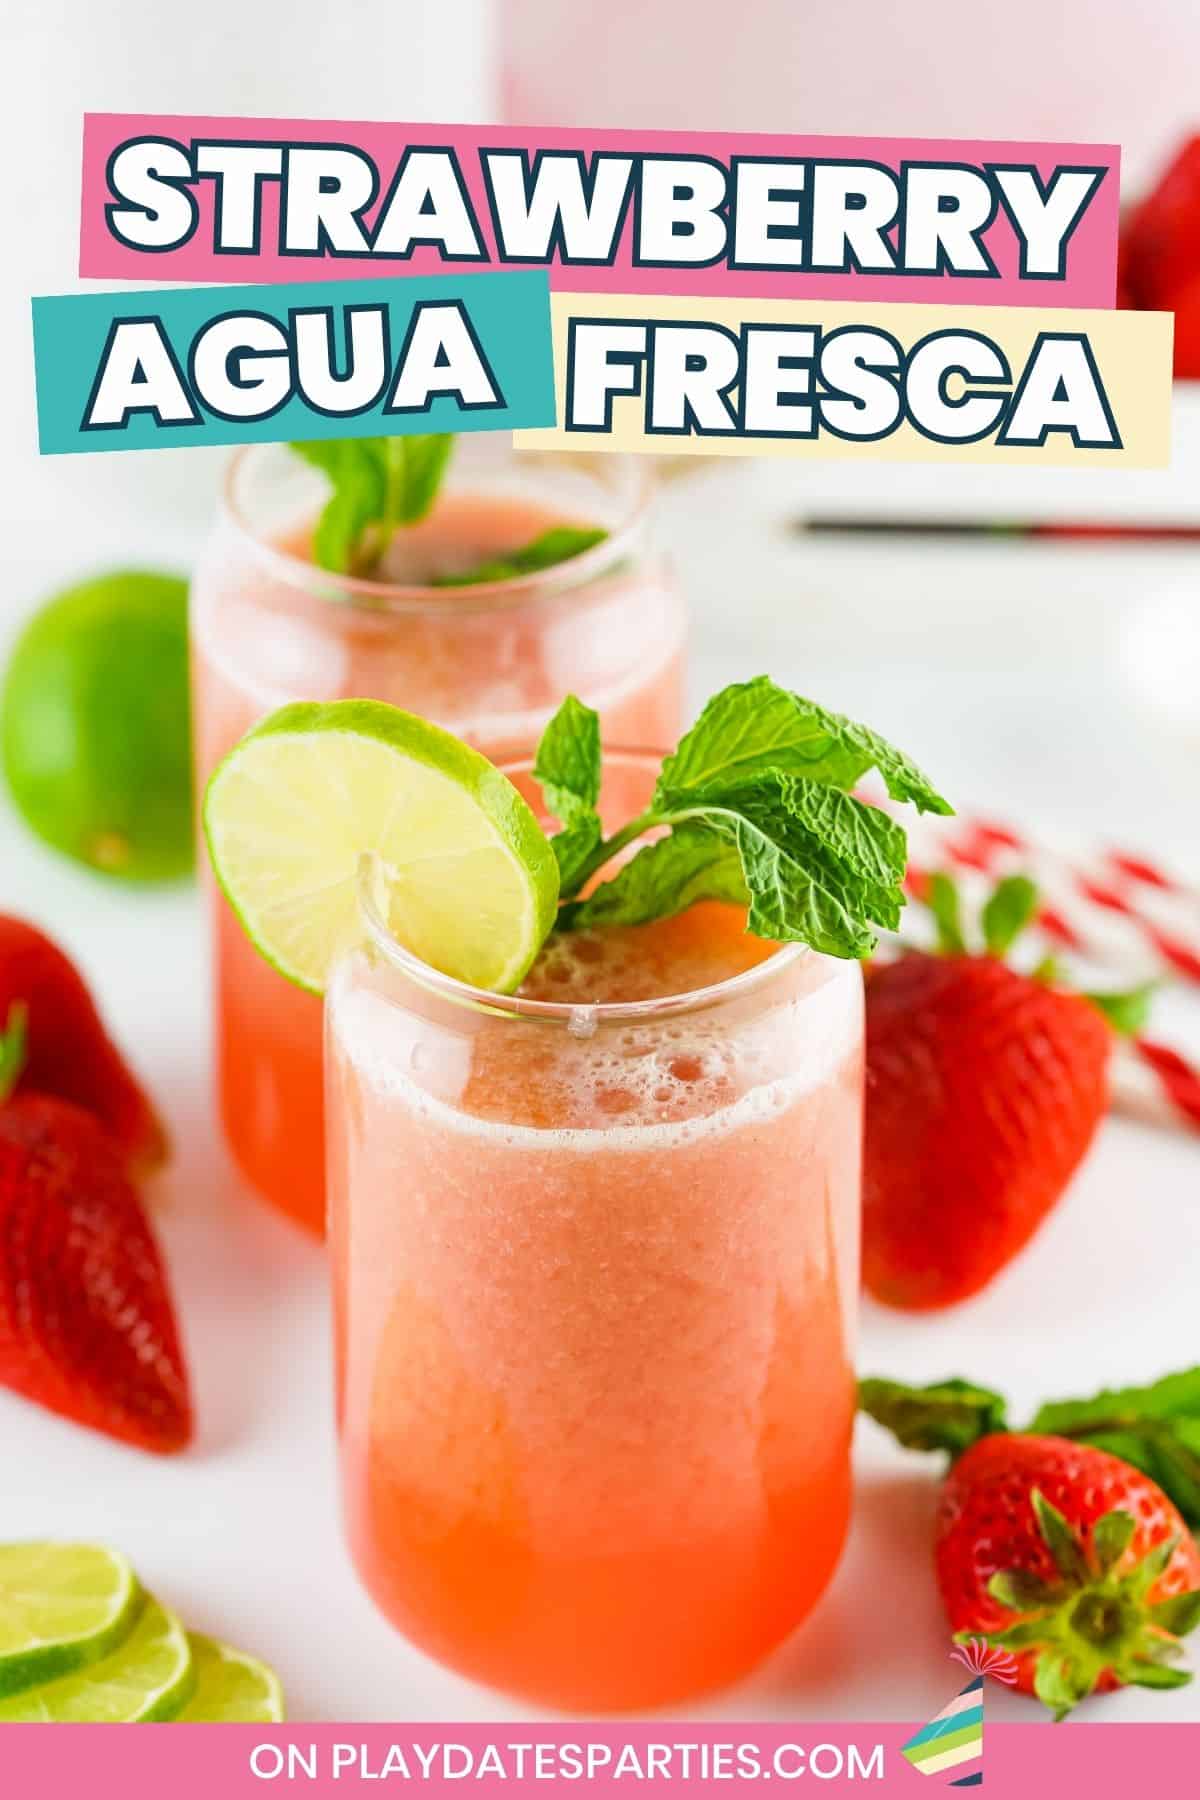 Strawberry Agua Fresca pin image.